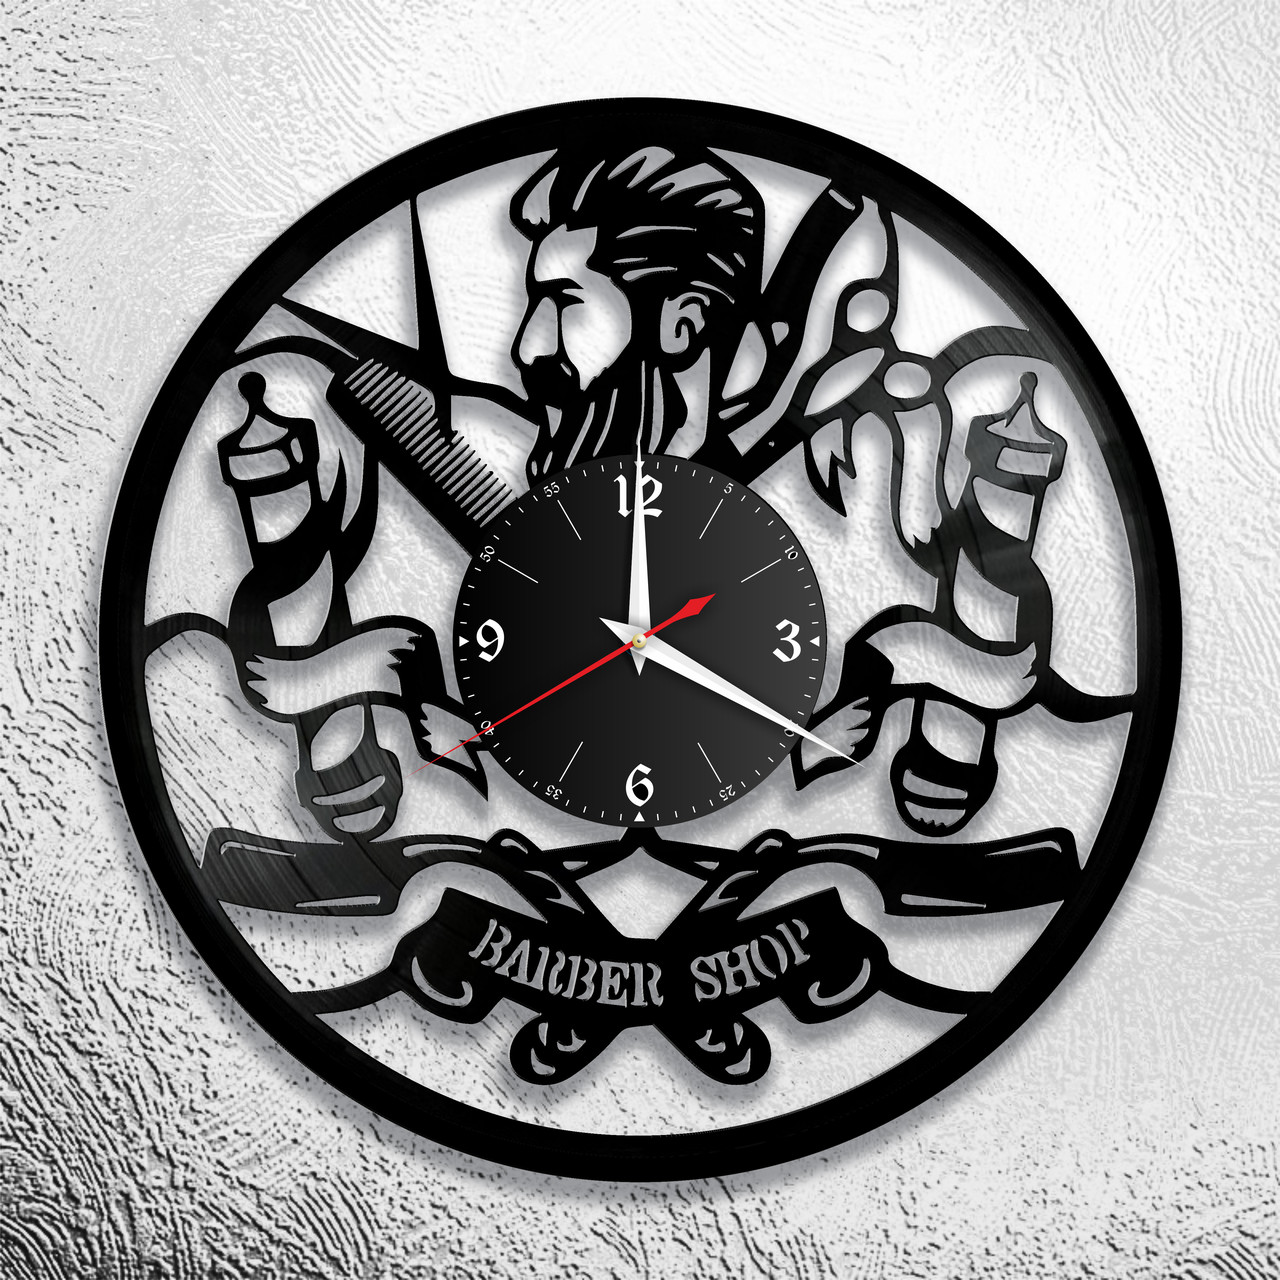 Оригинальные часы из виниловых пластинок "Парикмахерская" версия 9 барбершоп